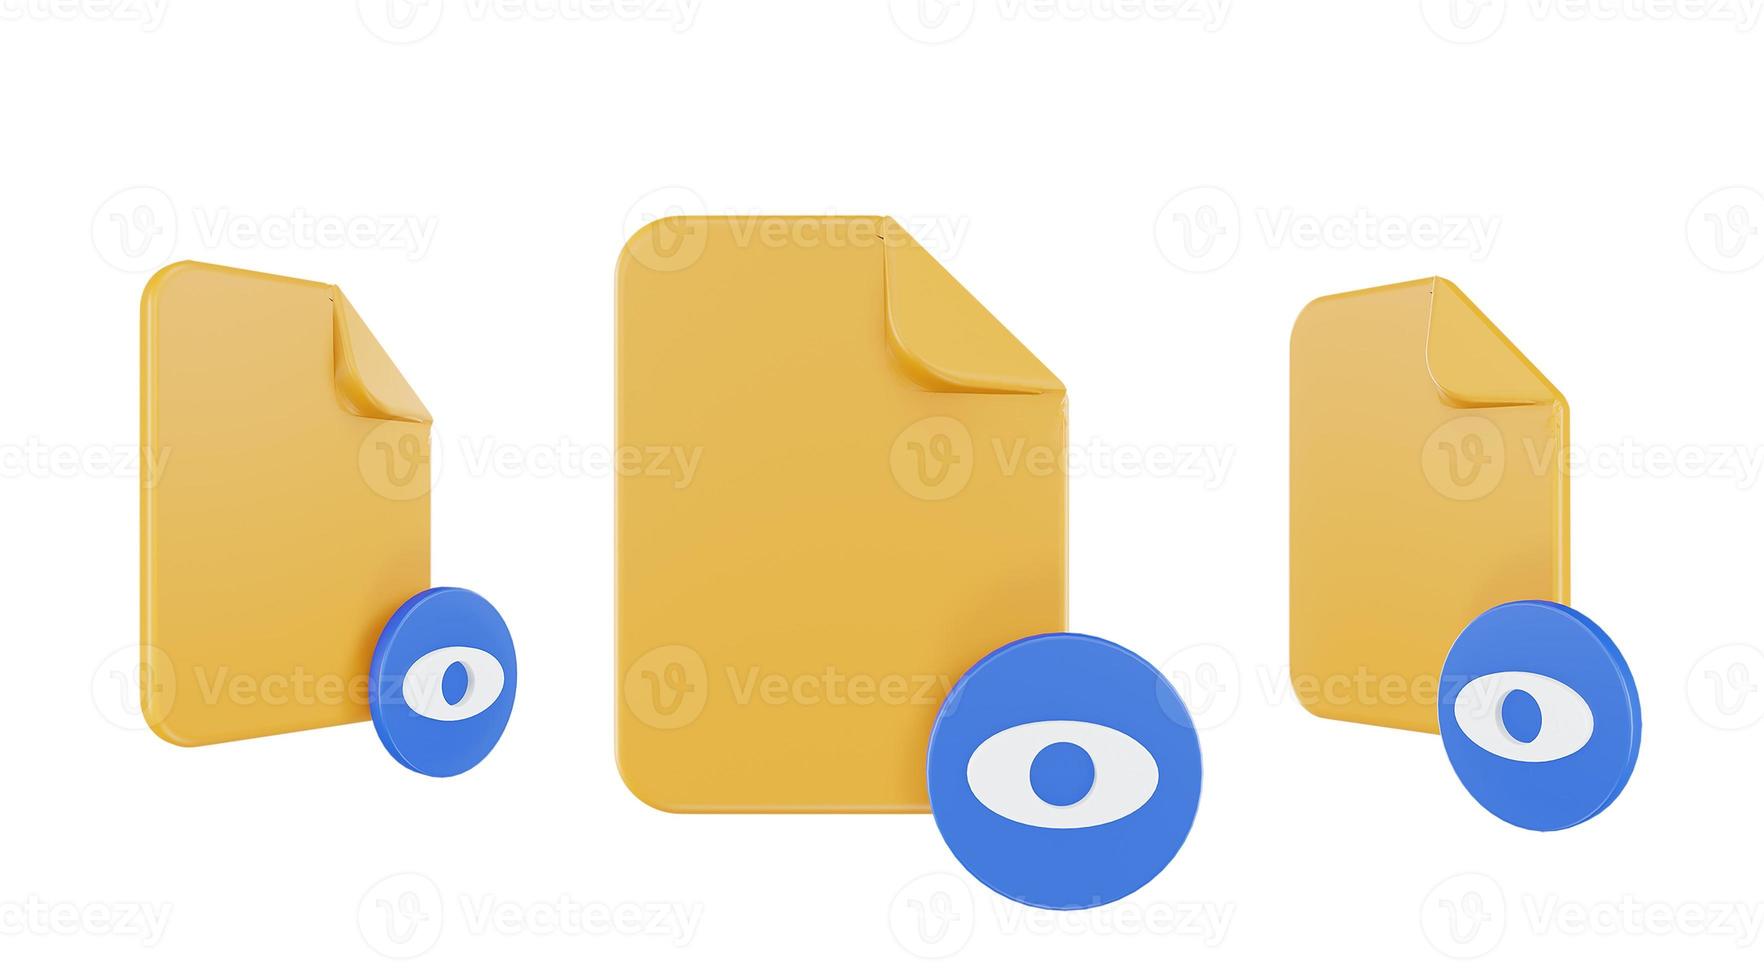 3D render filen sett ikon med orange fil papper och blå sett foto